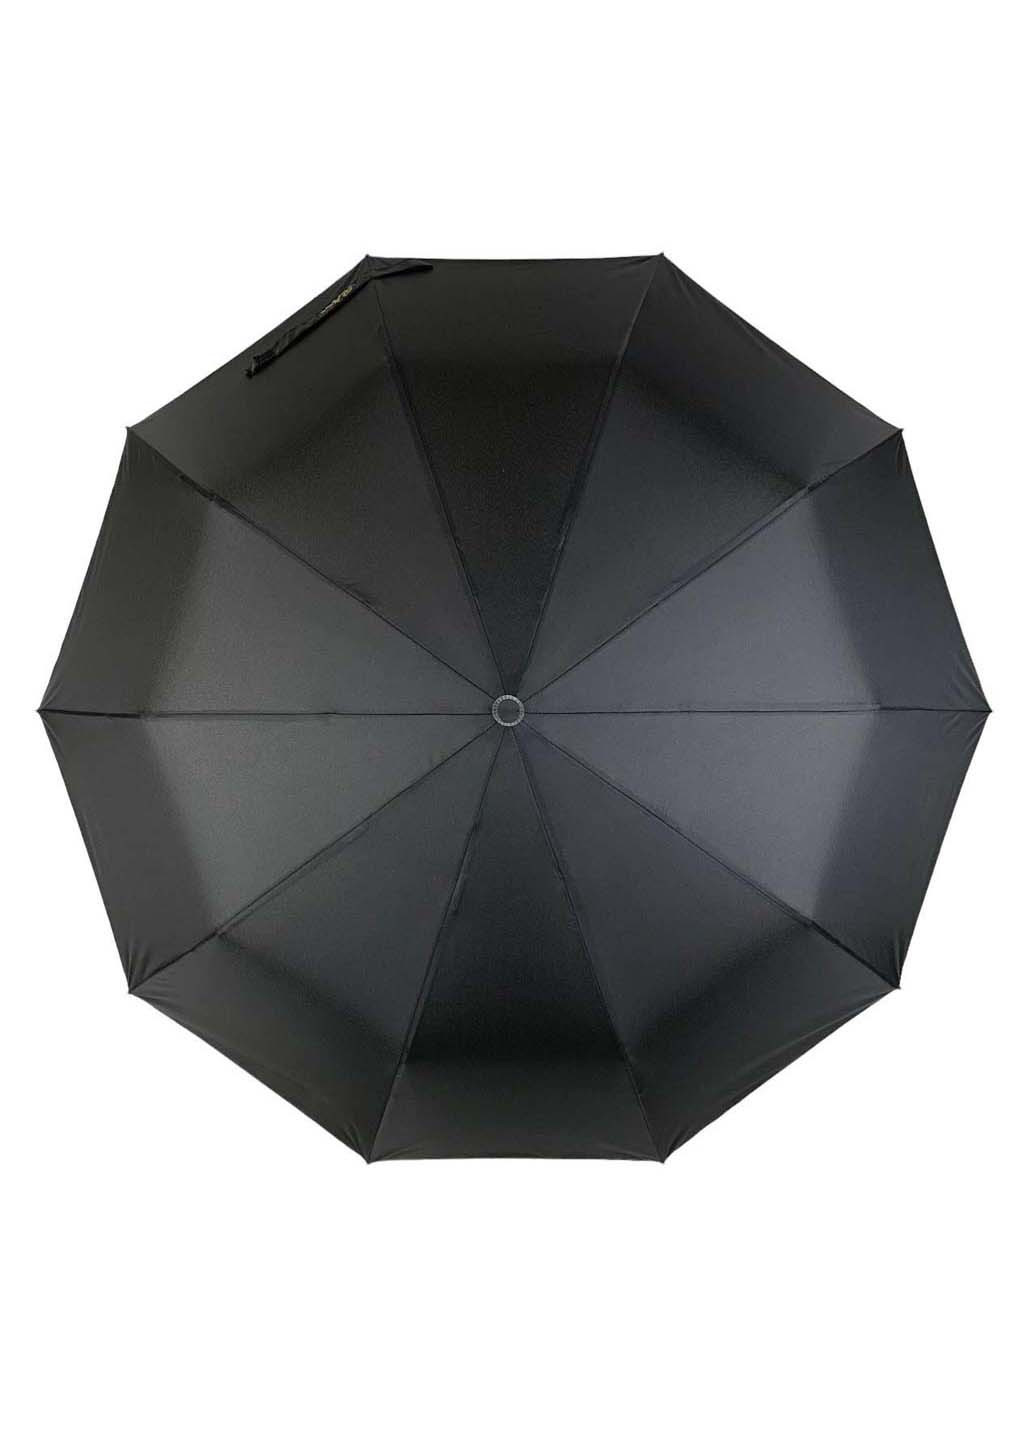 Мужской зонт-автомат от на 10 спиц Bellissima складной чёрный